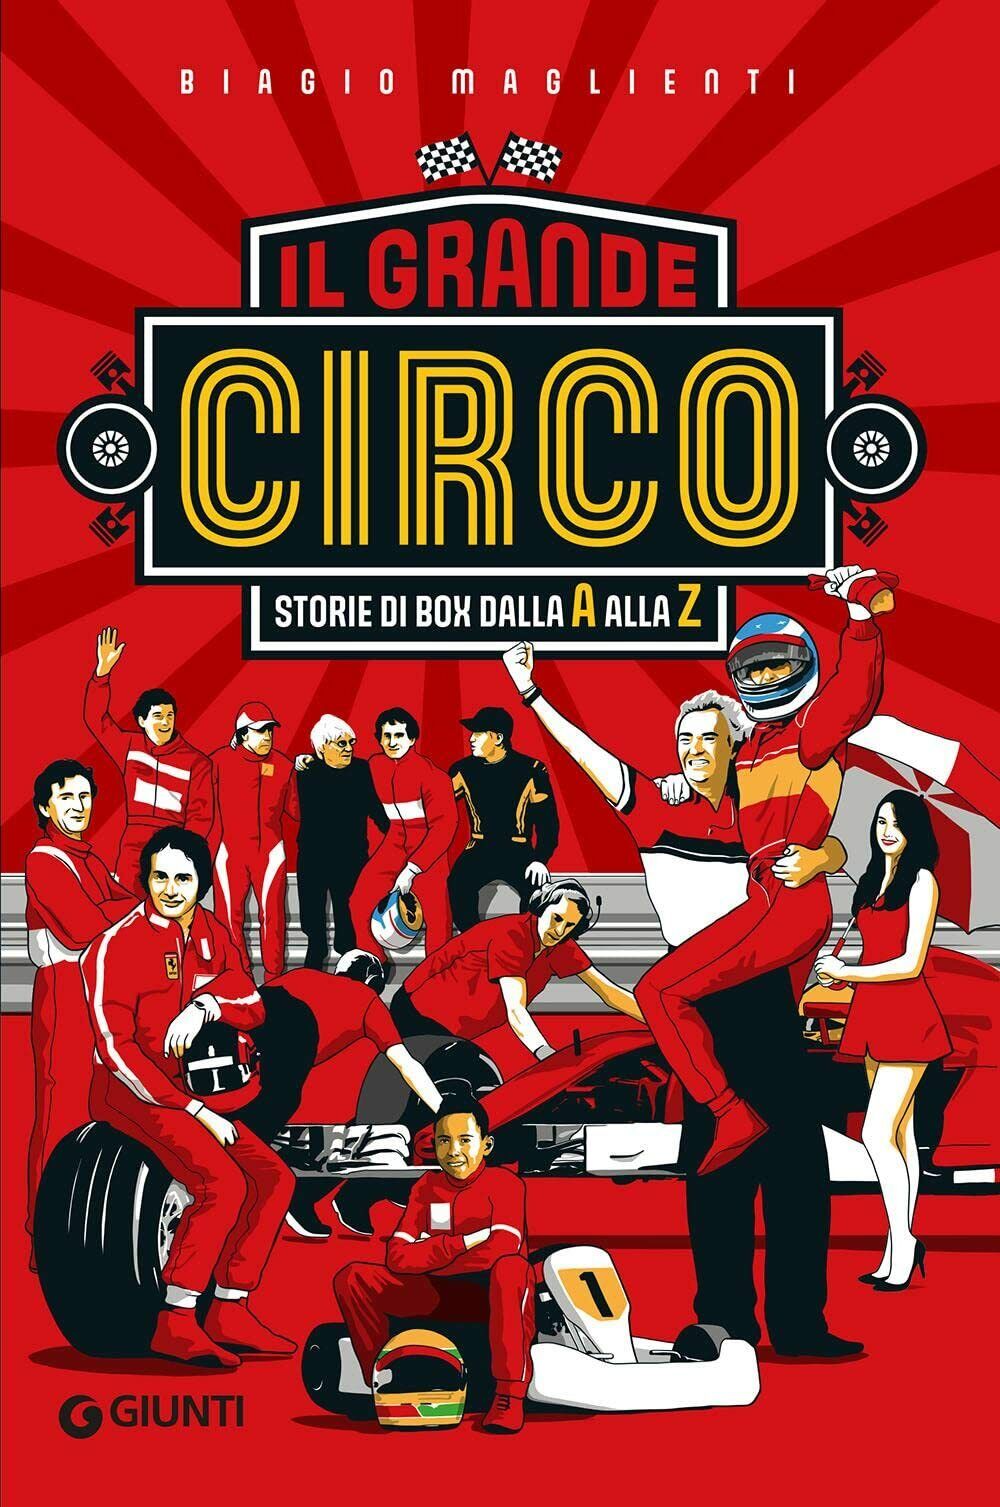 Il grande circo. Storie di box dalla A alla Z -  Biagio Maglienti - Giunti, 2022 libro usato